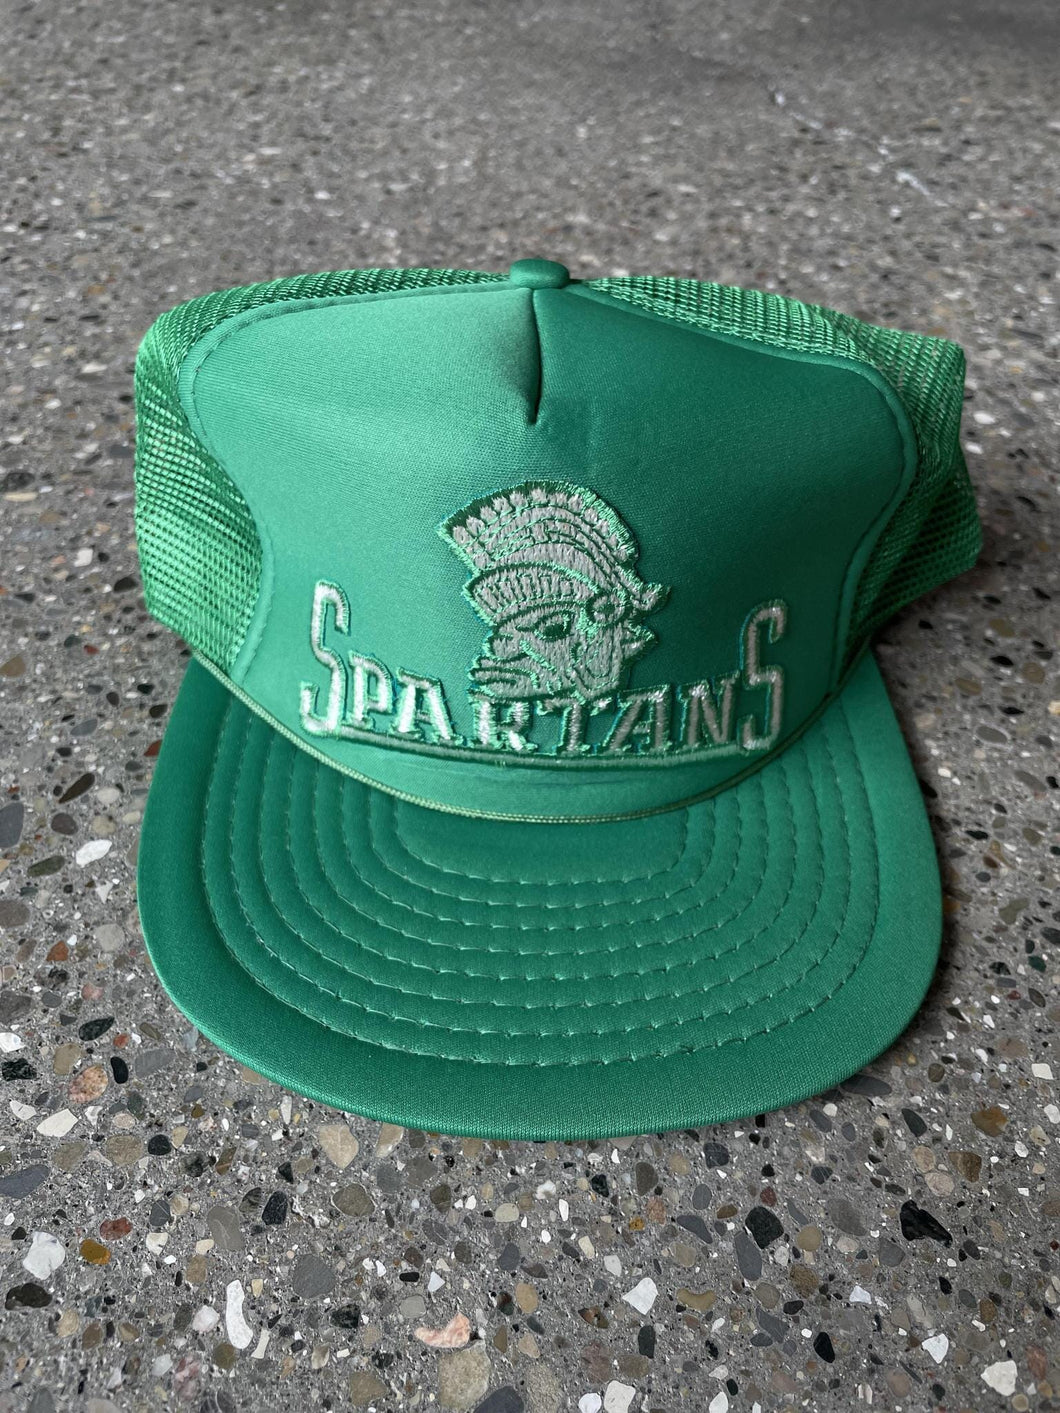 Michigan State Spartans Vintage Trucker Hat Green Mesh ABC Vintage 